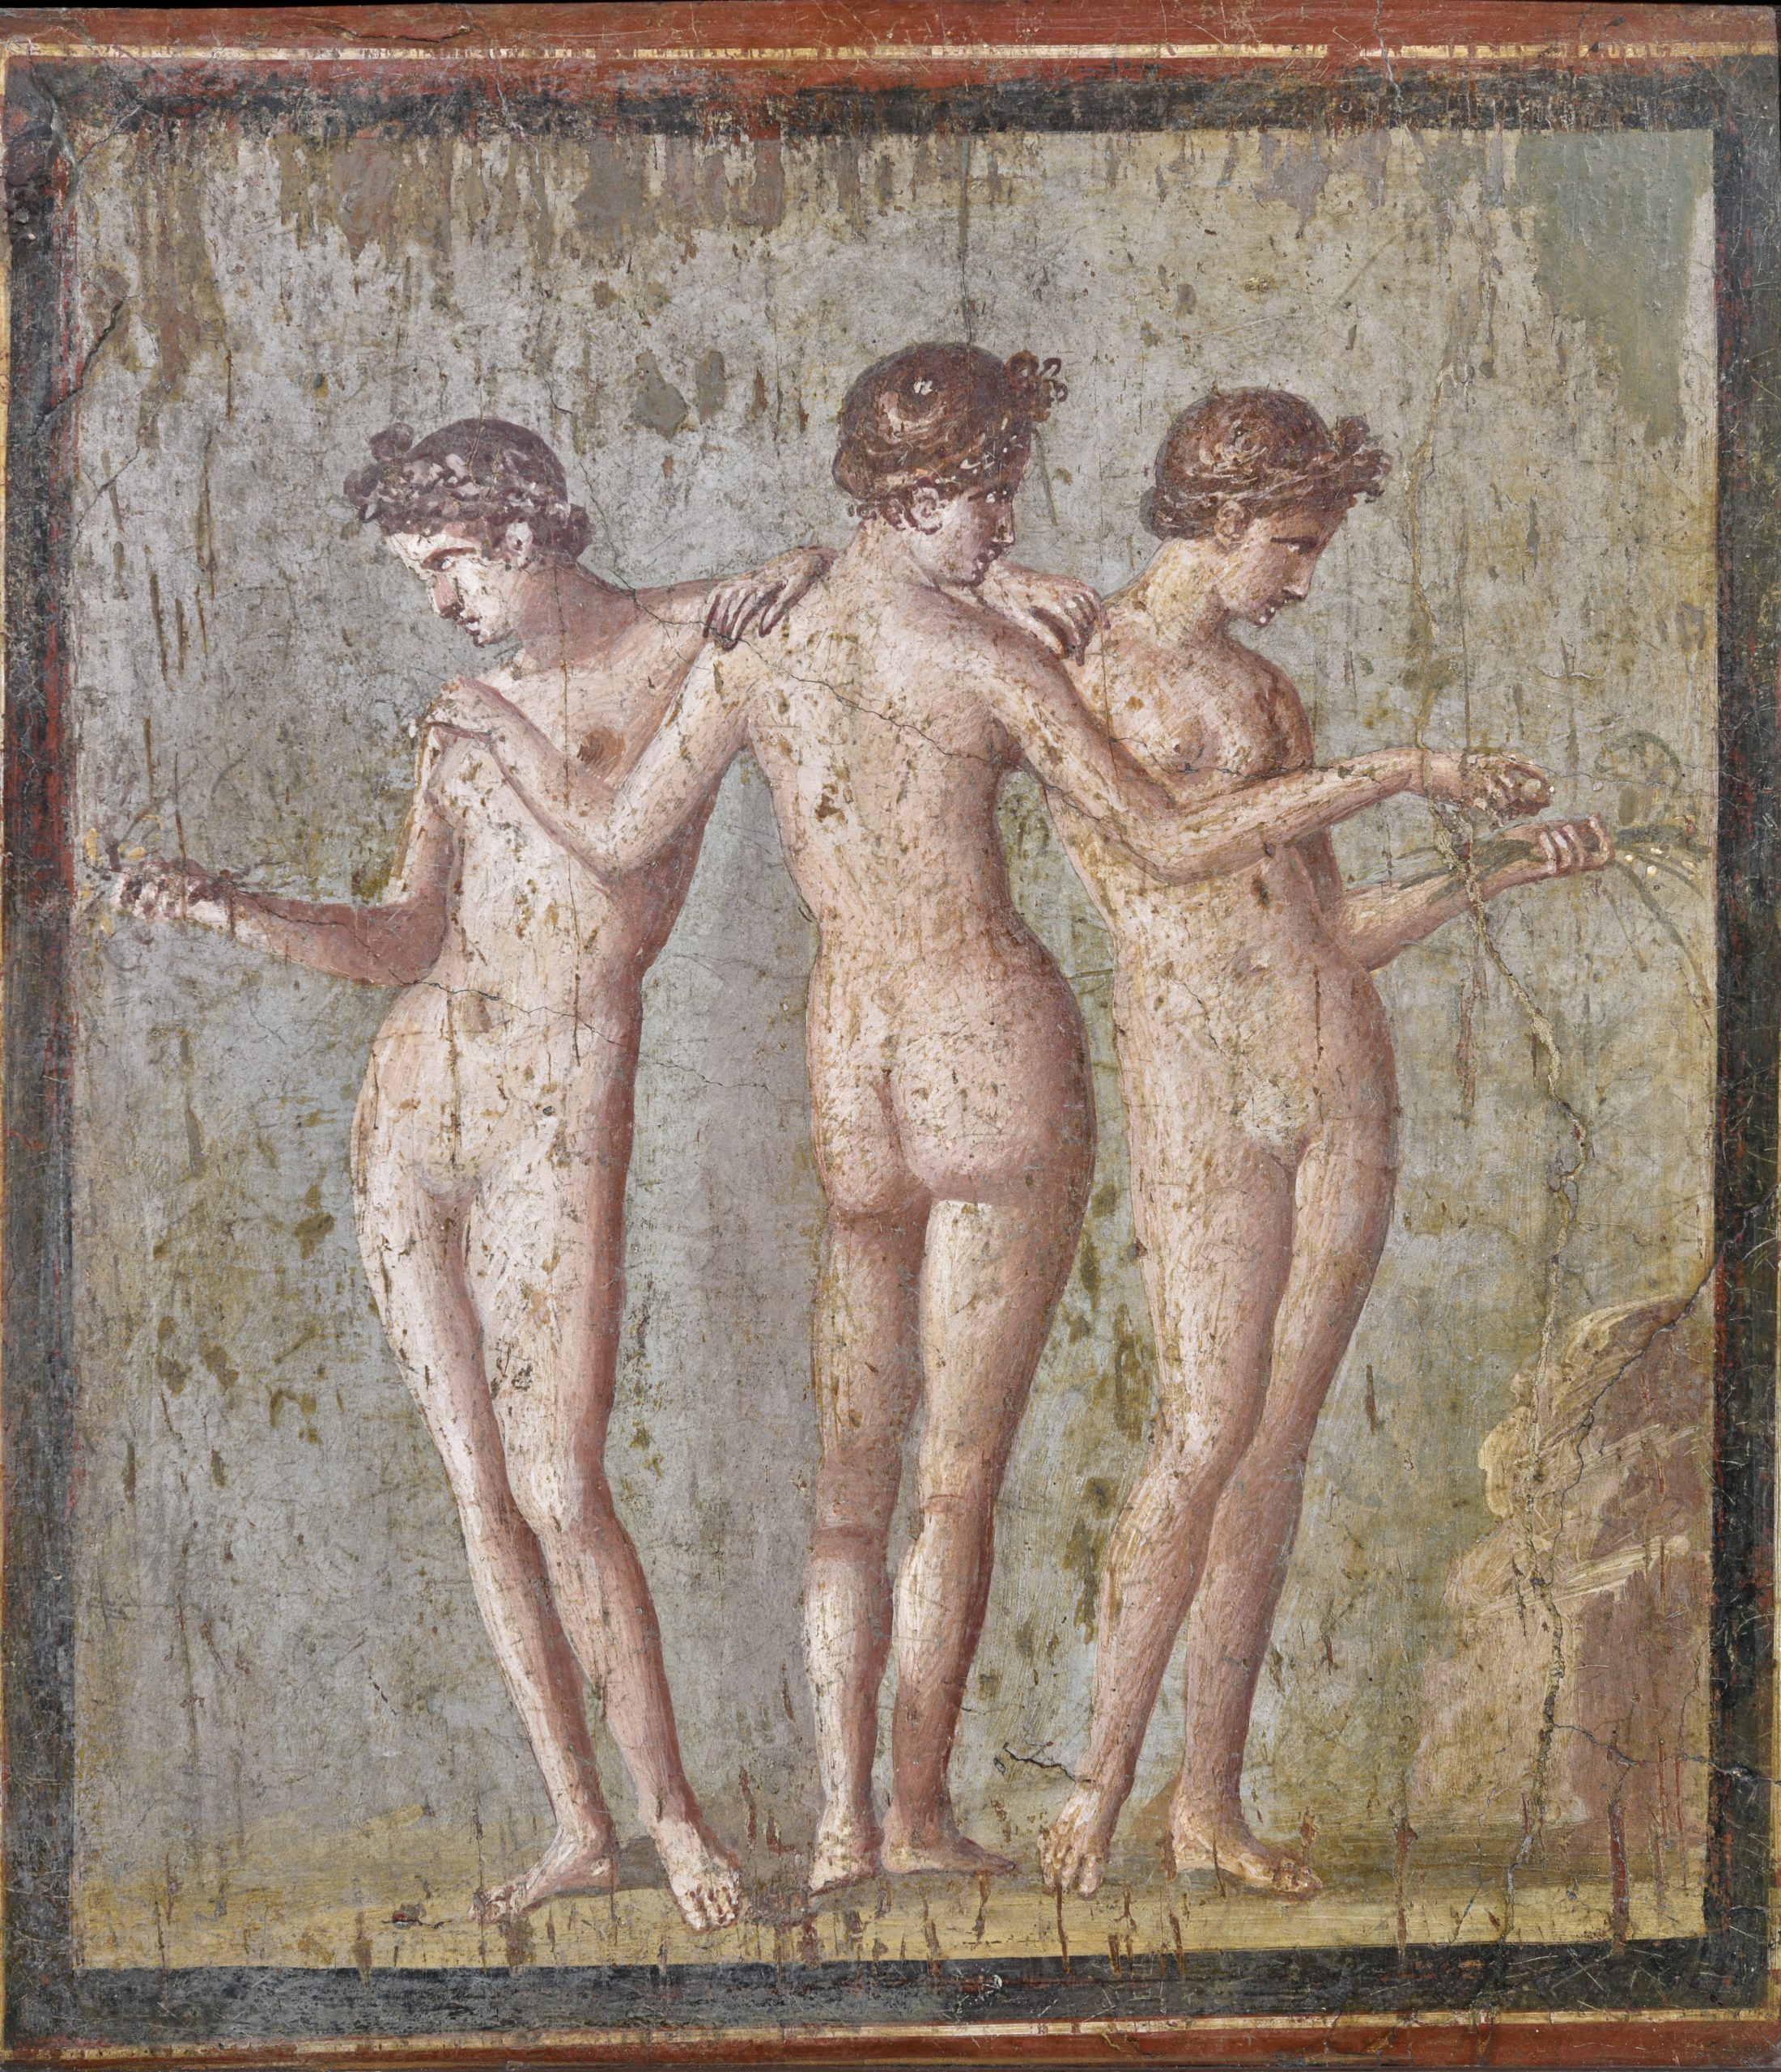 Le Tre Grazie Pompei, VI, 17, 31 o 36 Insula Occidentalis, Masseria di Cuomo - Irace Affresco, 57 x 53 cm MANN, inv. 9231 I secolo d.C. - IV stile